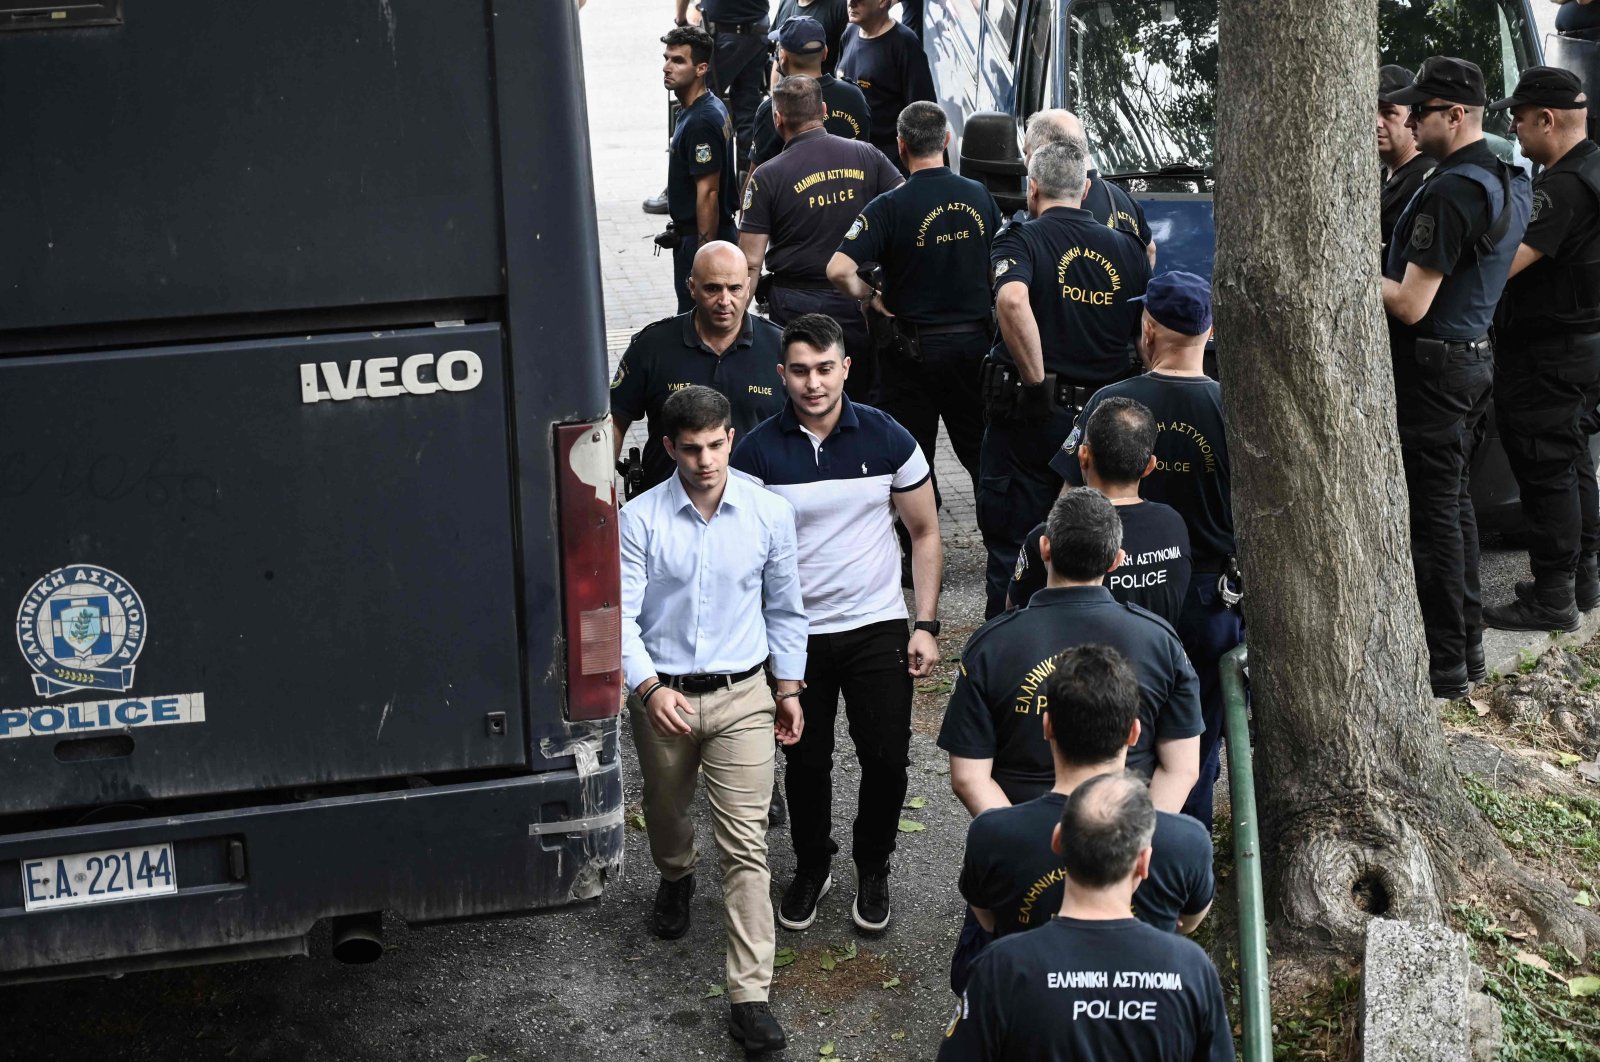 7 receive life sentences in Greece for fatal football fan stabbing ...